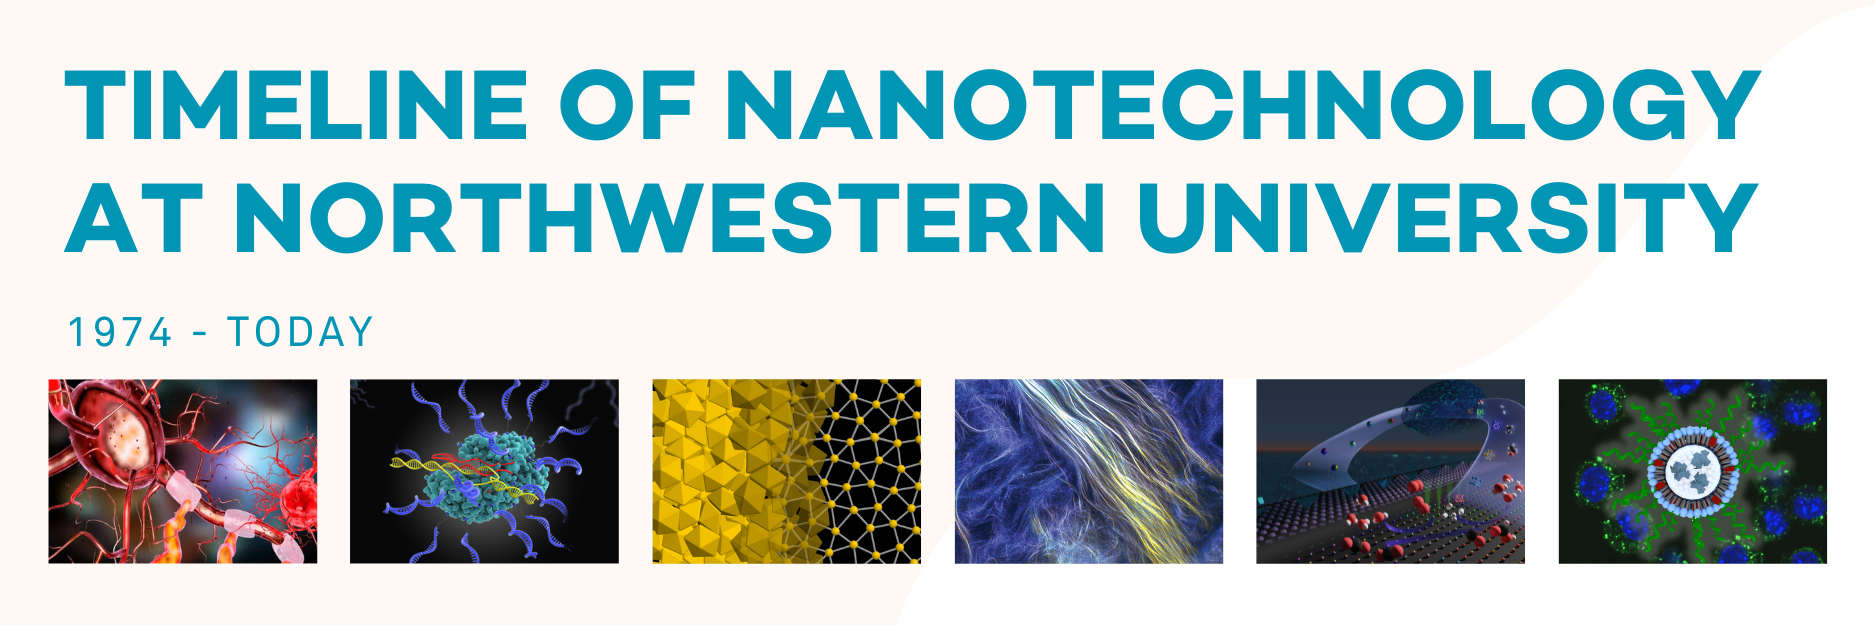 Timeline of Nanotechnolgy